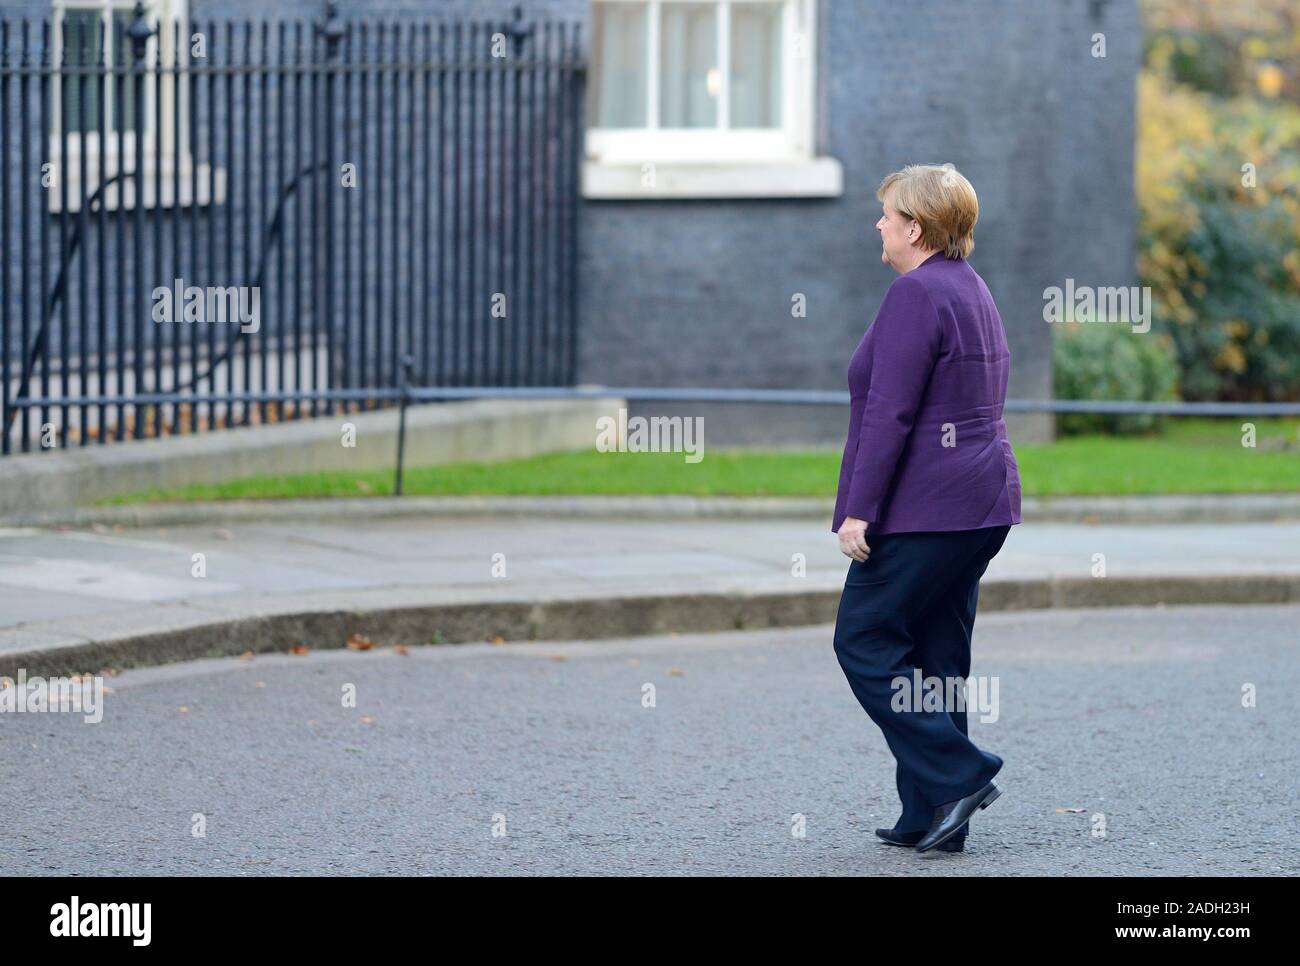 La canciller alemana, Angela Merkel, de llegar a Downing Street durante una reunión de los dirigentes de la OTAN, 3 dic 2019 Foto de stock